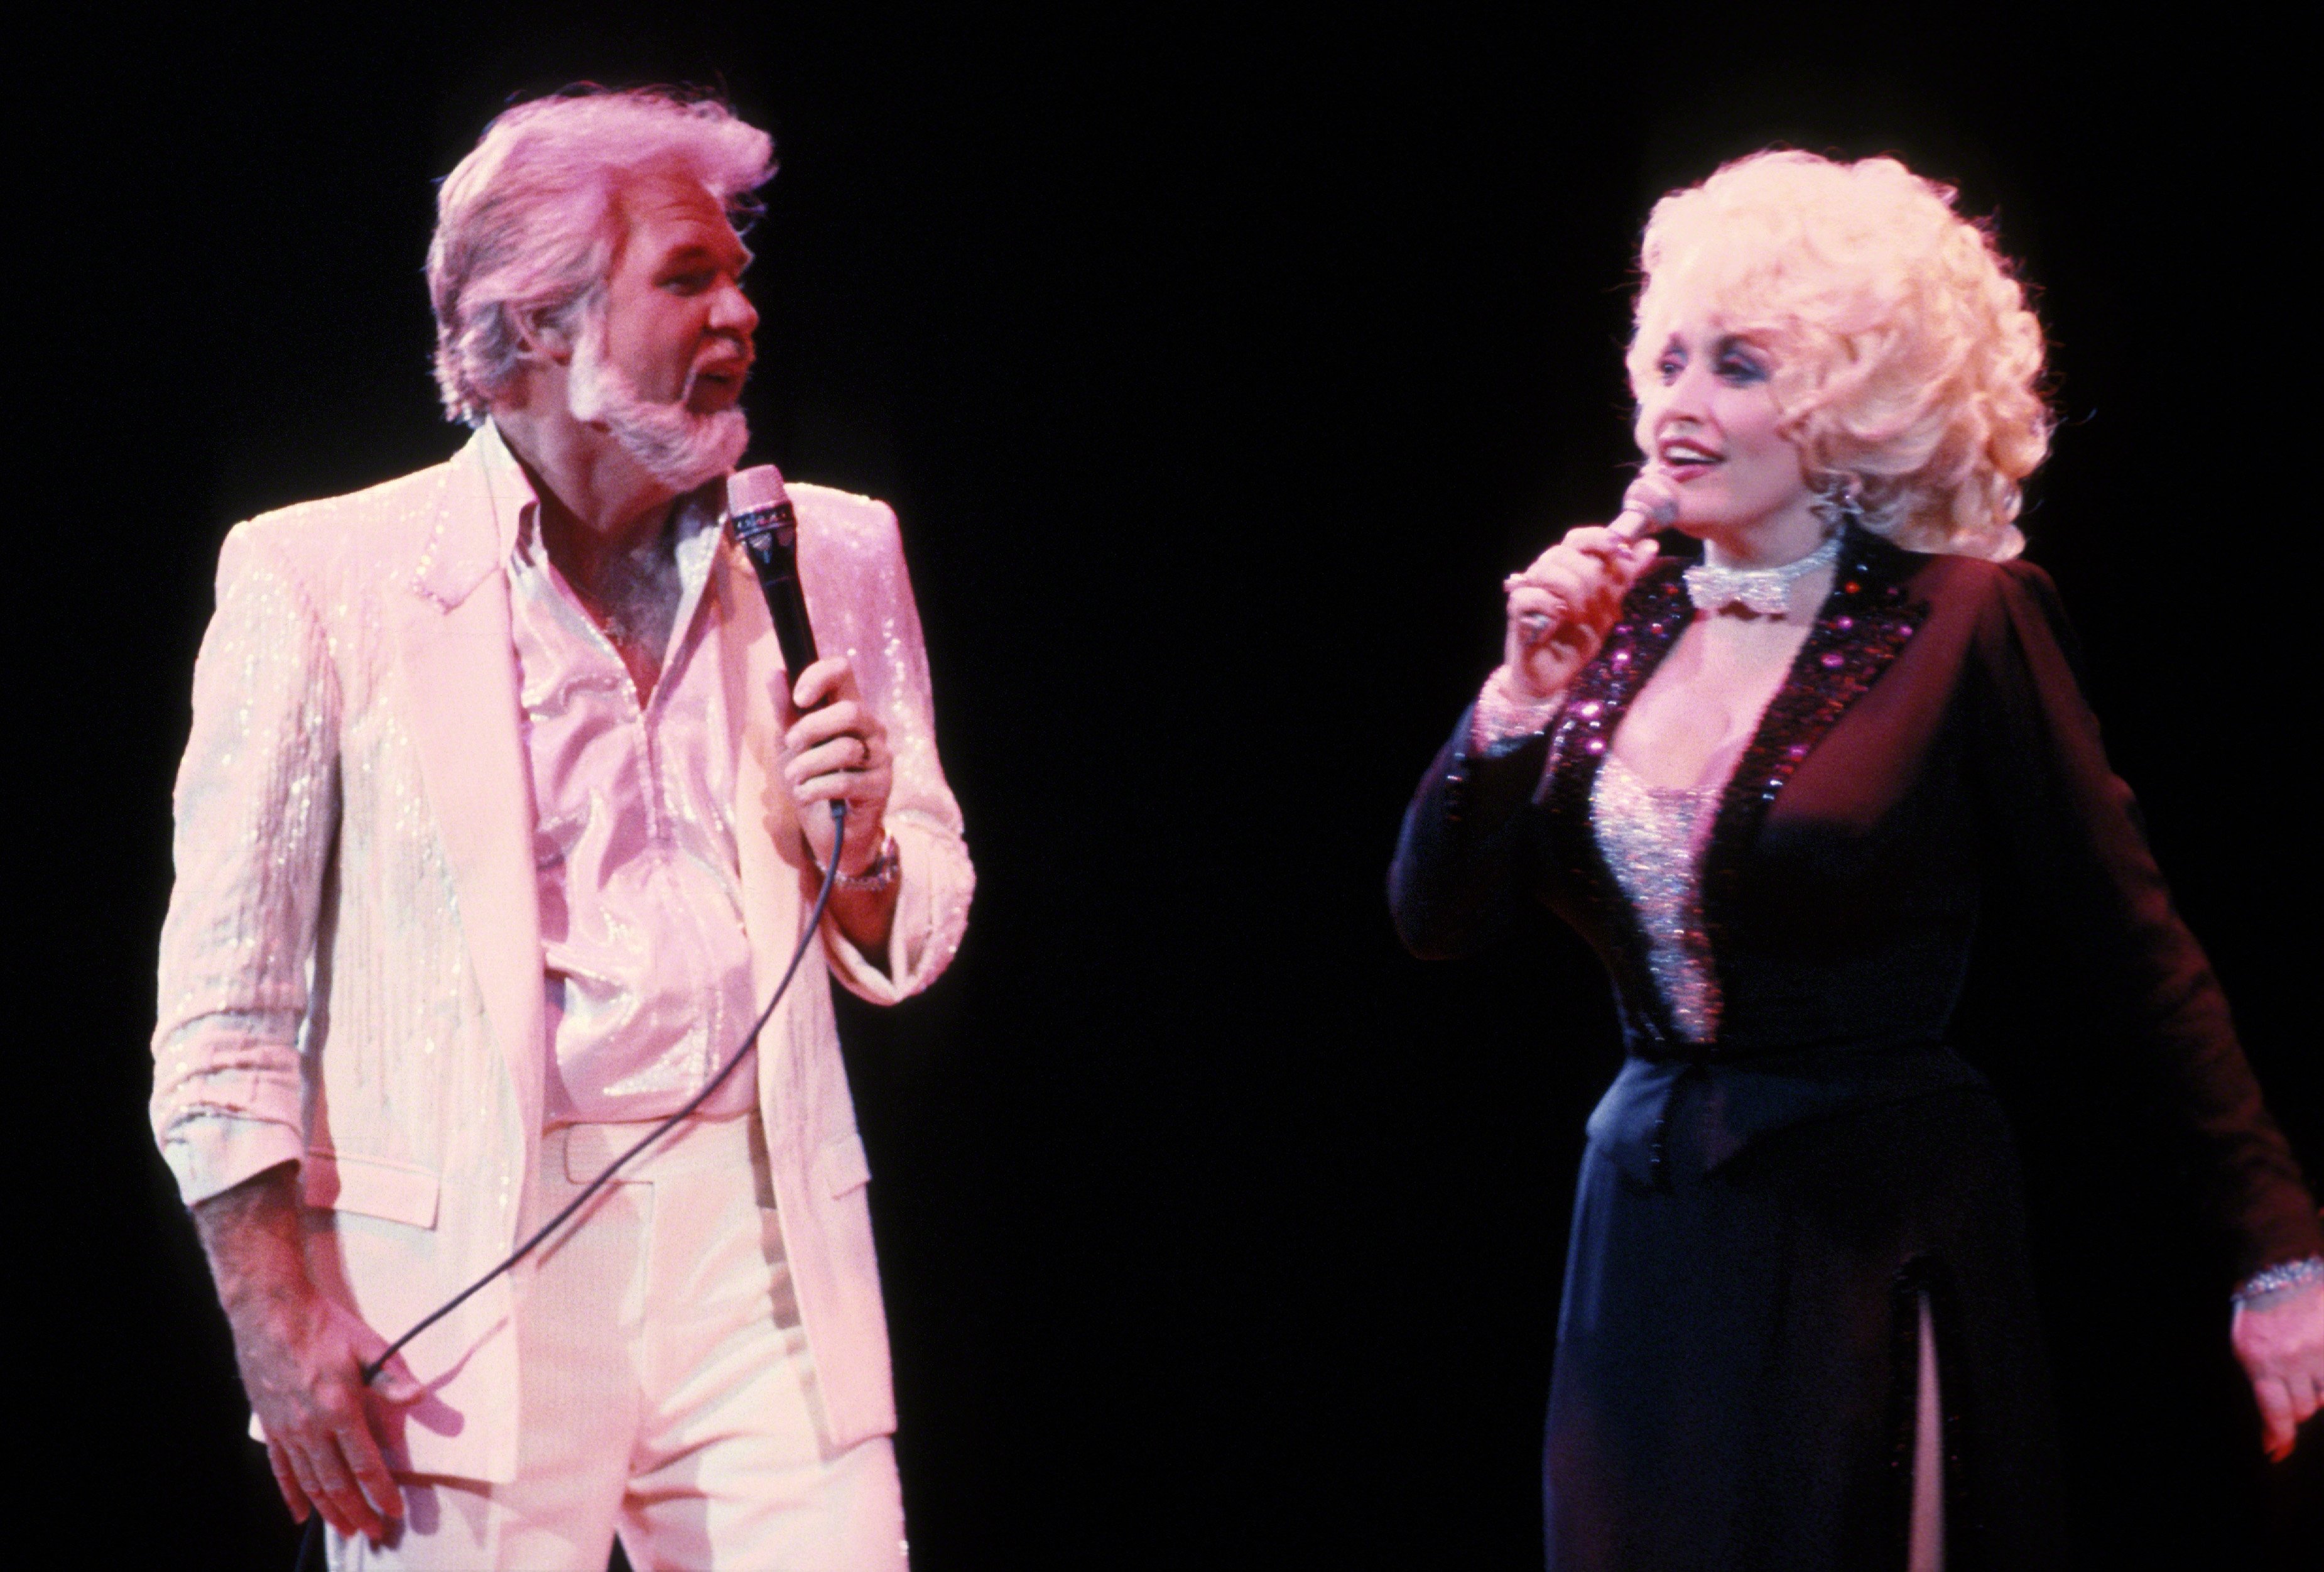 Dinle: Kayıp Kenny Rogers, Dolly Parton Song Yeniden Ortaya Çıktı